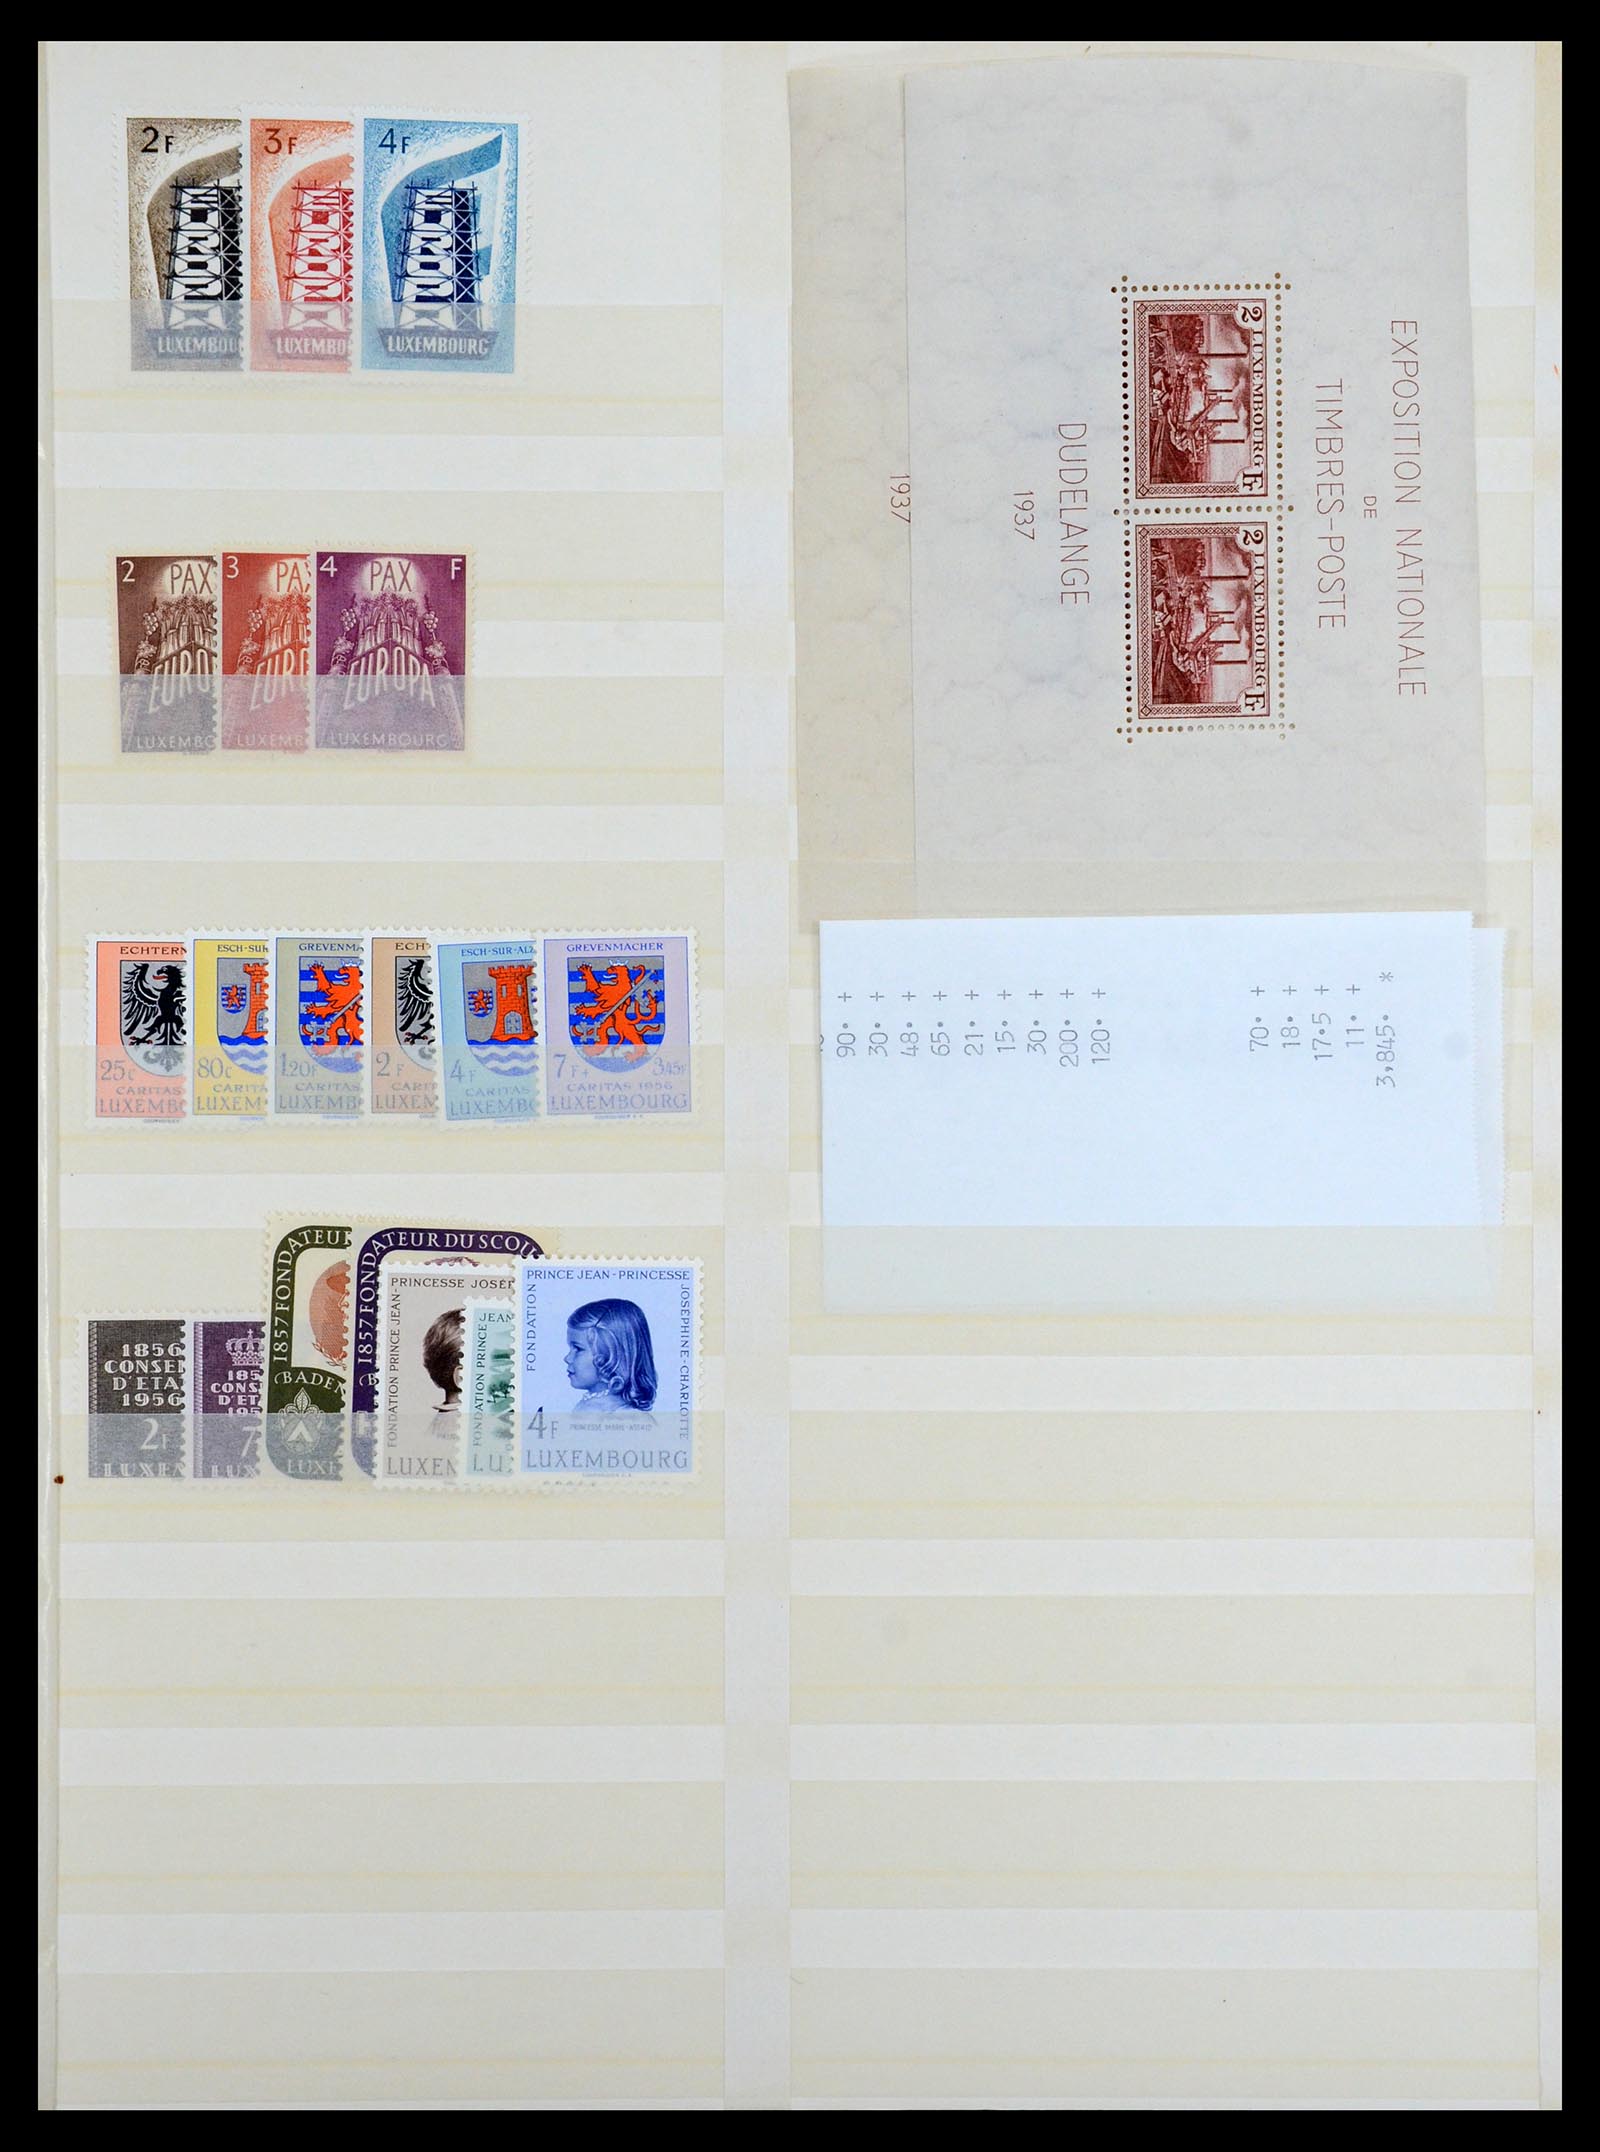 35165 011 - Postzegelverzameling 35165 Zwitserland en Luxemburg toppers.